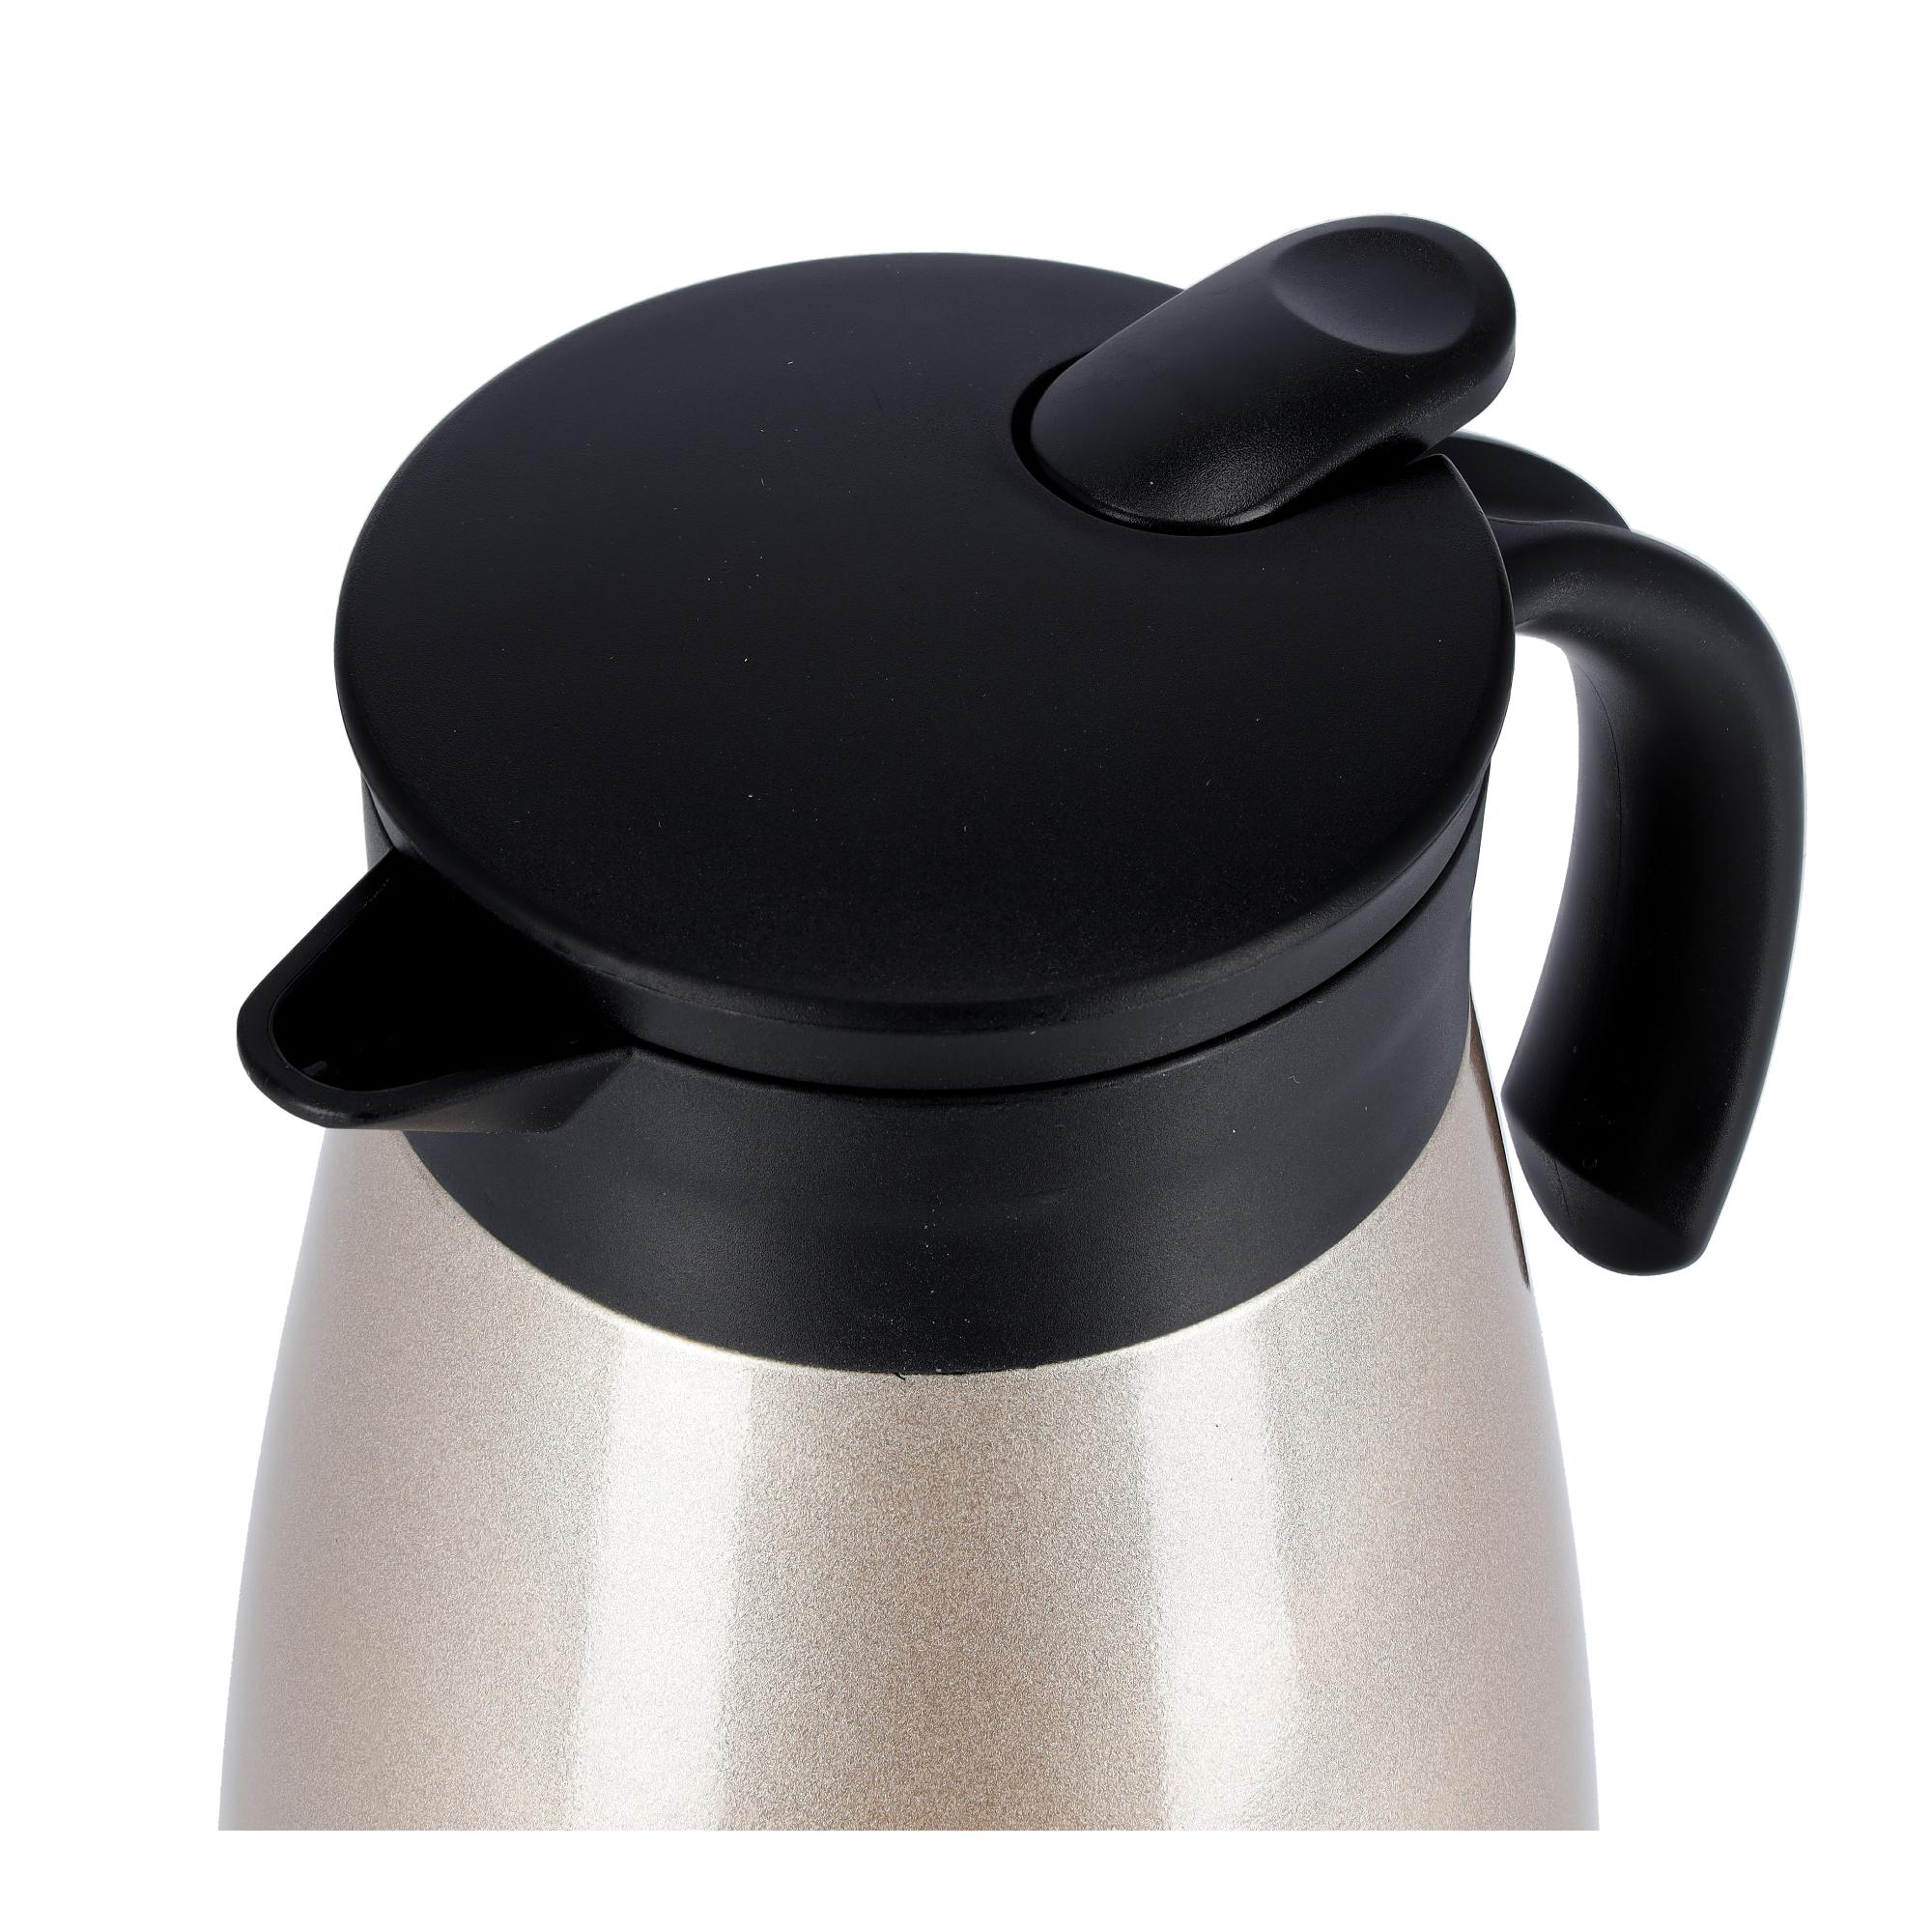 ترمس قهوة حافظ للحرارة 1.5 لتر محمول بارد/ساخن رويال فورد Royalford Hot/Cold 1.5L Coffee Pot - cG9zdDozNzIzMzc=